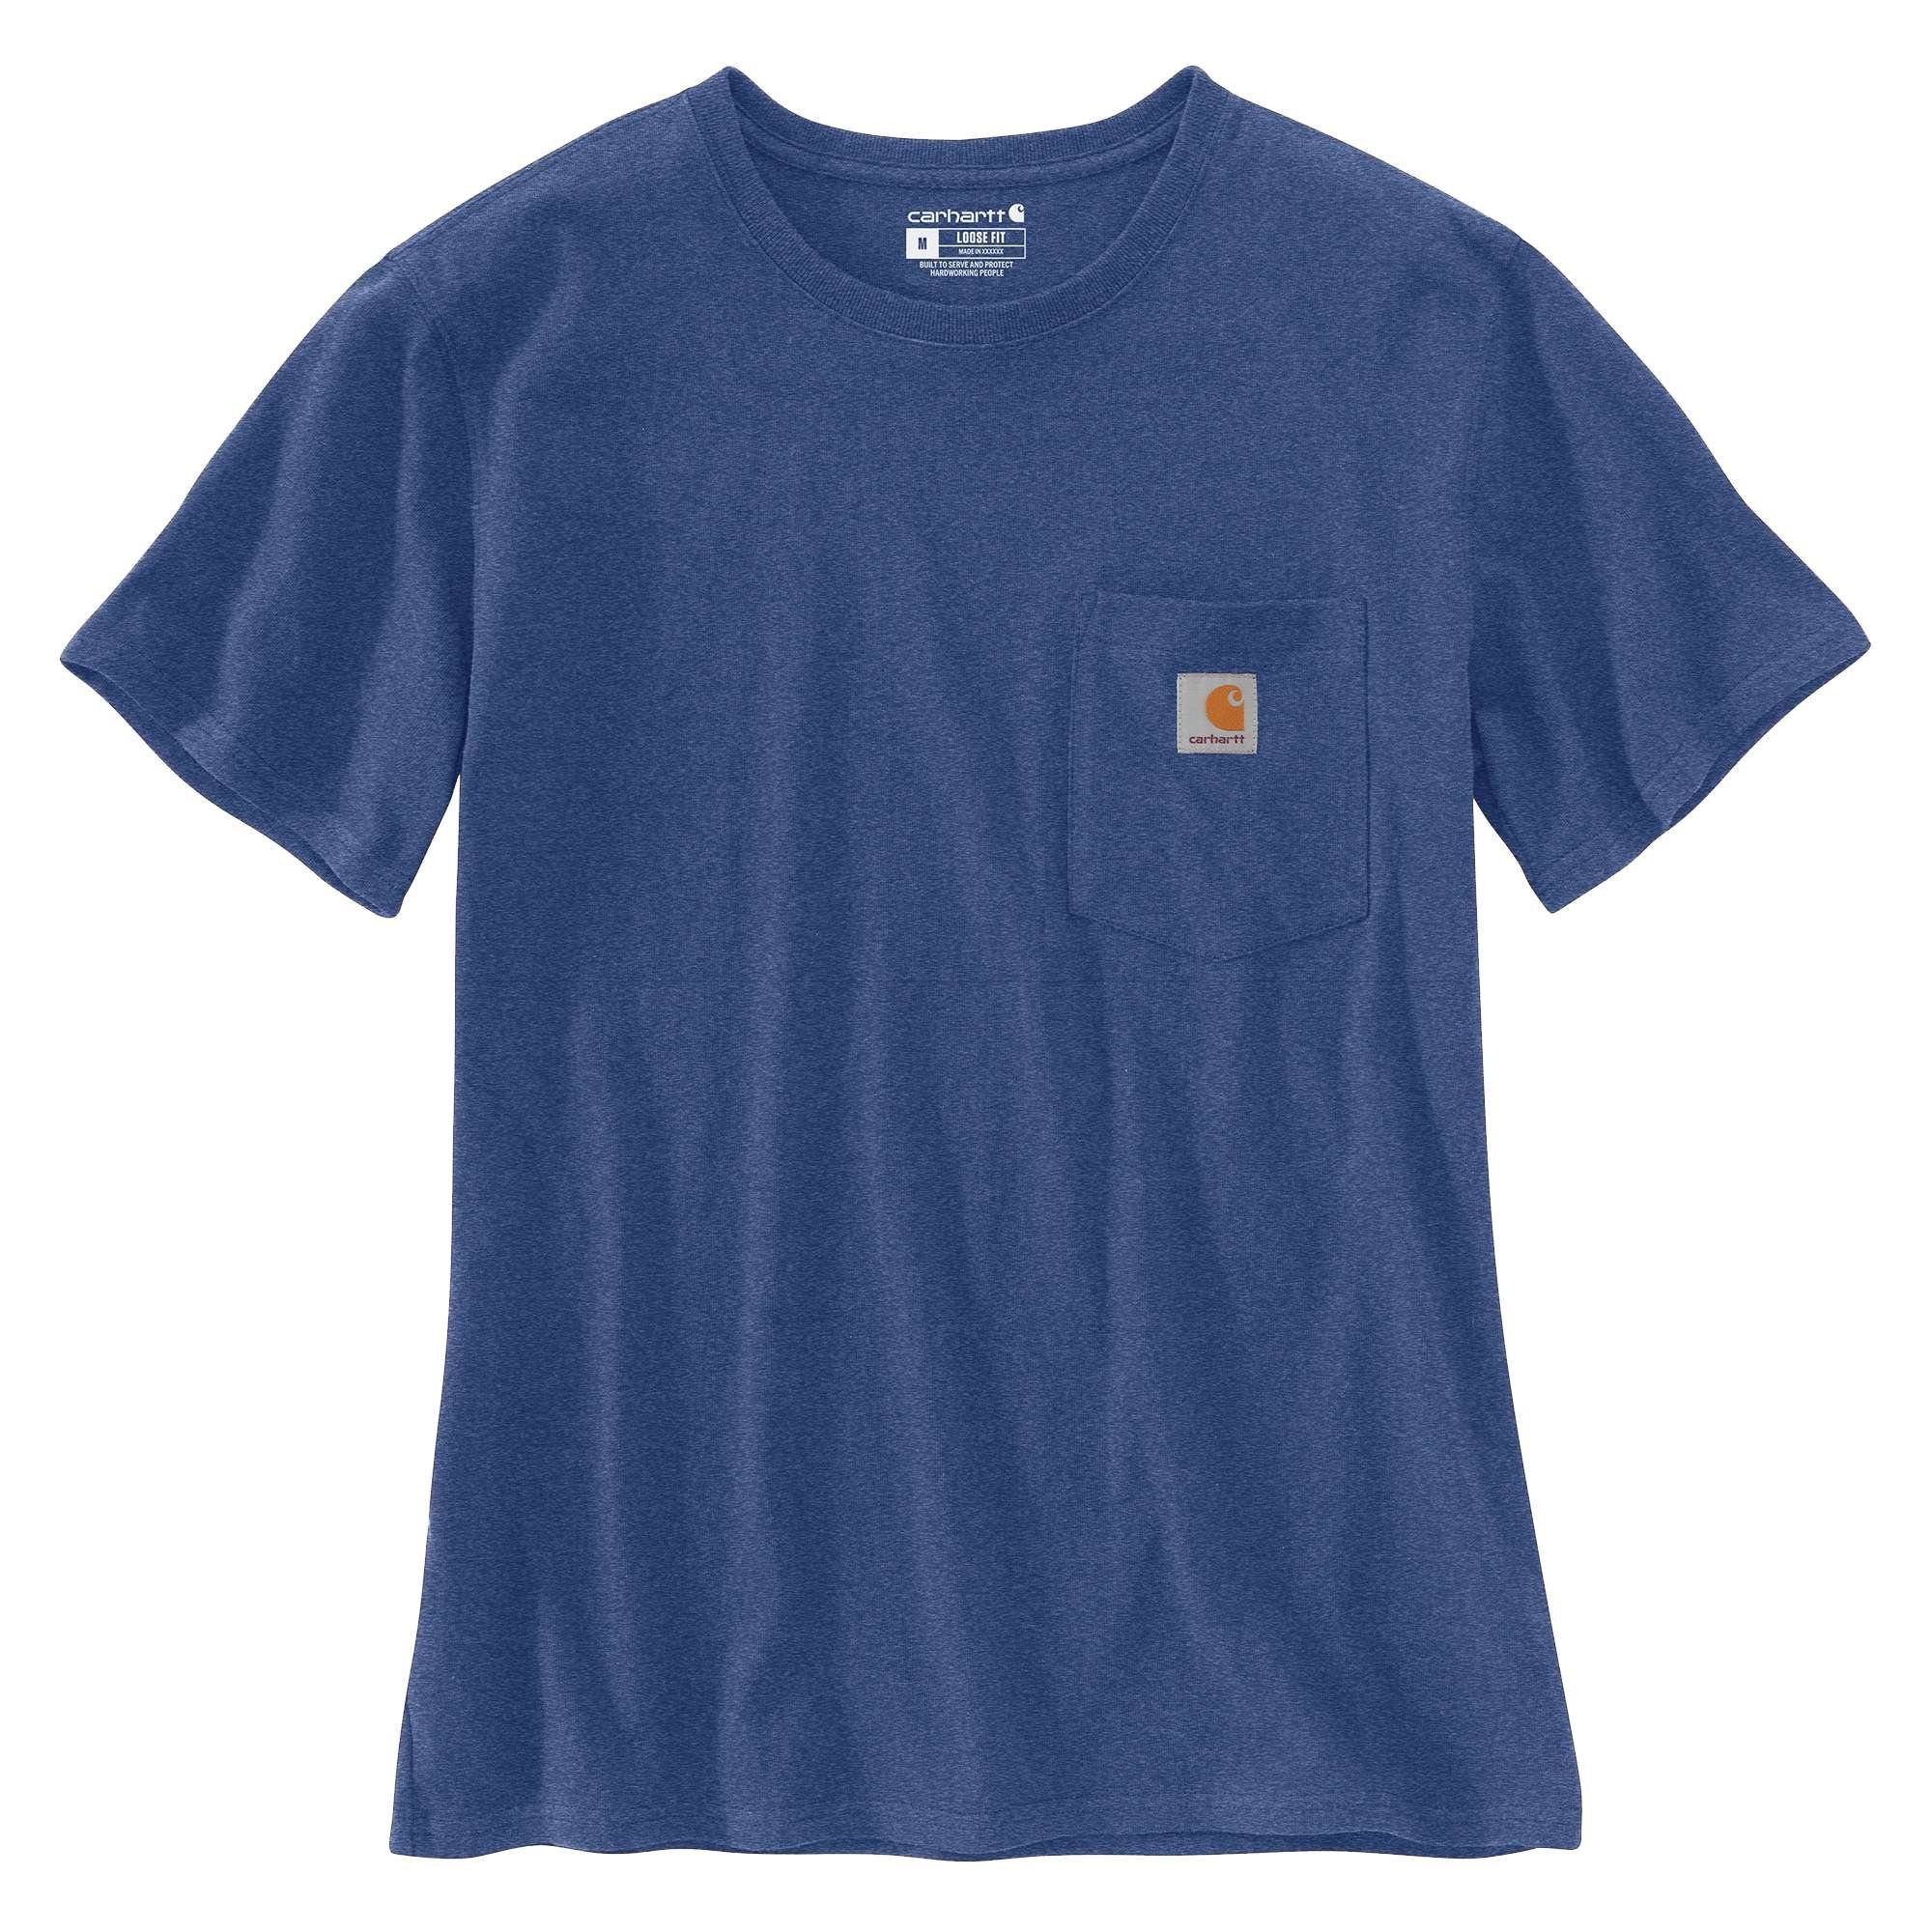 Carhartt T-Shirt Carhartt Damen T-Shirt Loose Fit Heavyweight Short-Sleeve Pocket Adult scout blue heather